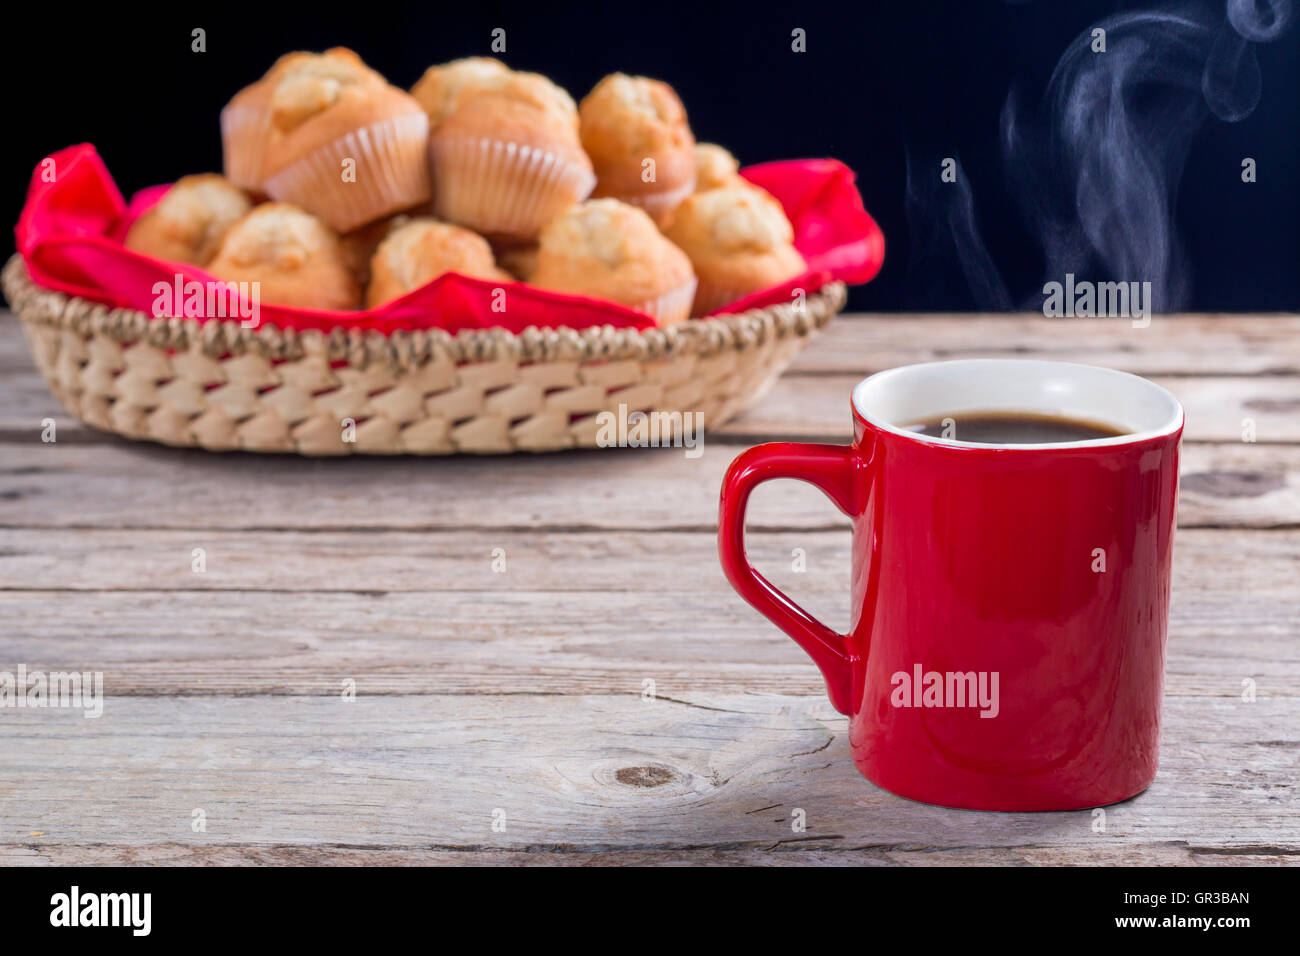 Heißer Kaffee und Muffins zum Frühstück bereit Stockfoto